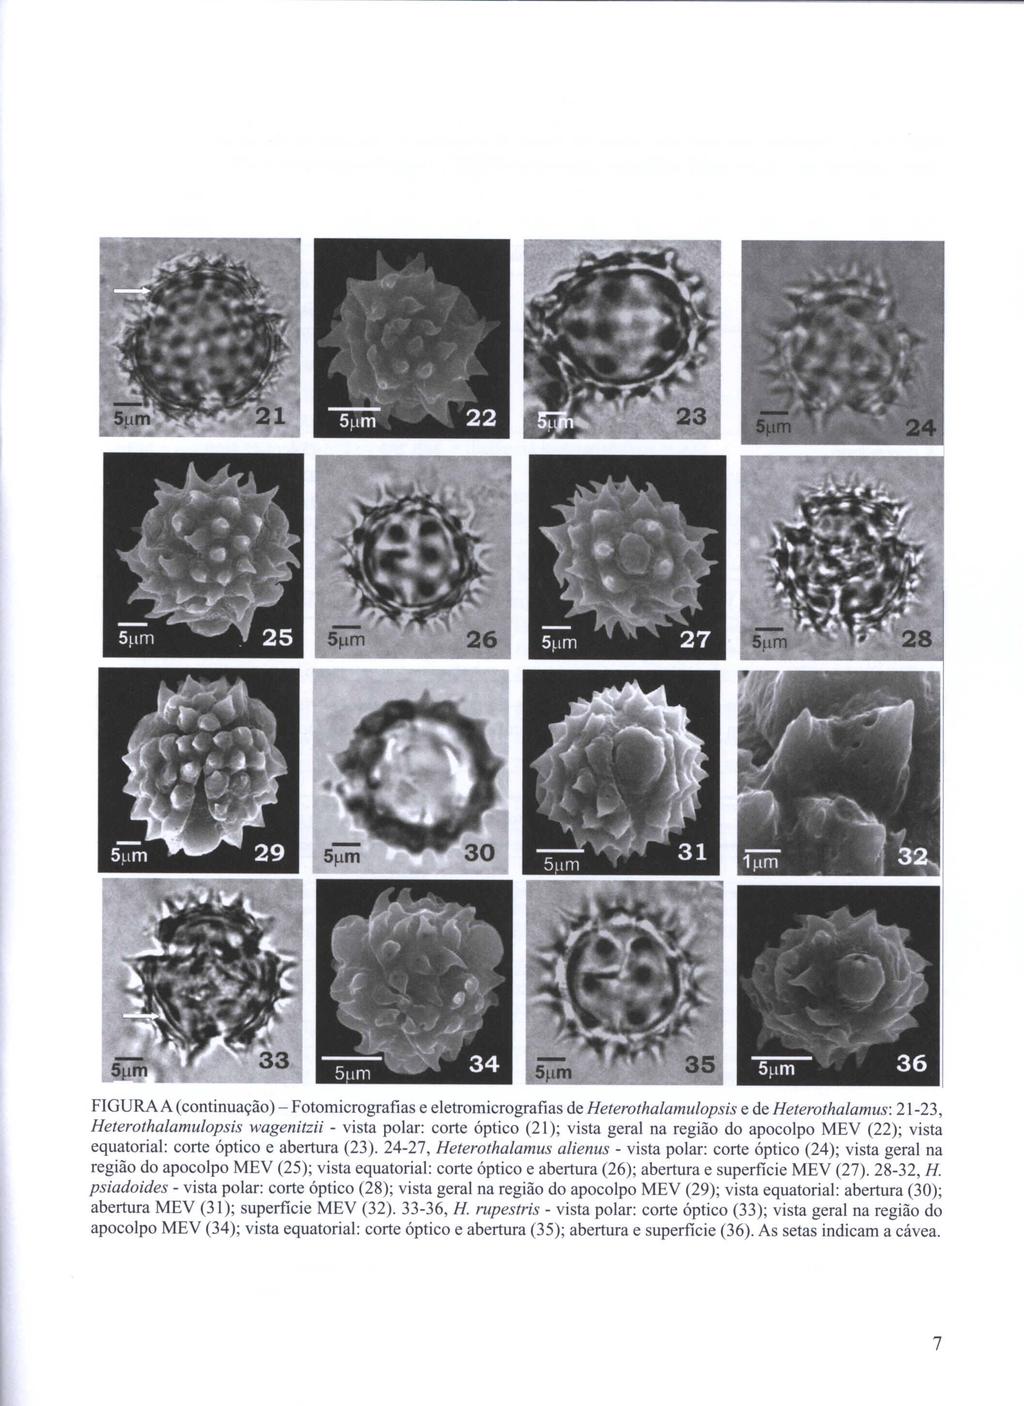 FIGURA A (continuação) - Fotomicrografias e eletromicrografias de Heterothalamulopsis e de Heterothalamus: 21-23, Heterothalamulopsis wagenitzii - vista polar: corte óptico (21); vista geral na